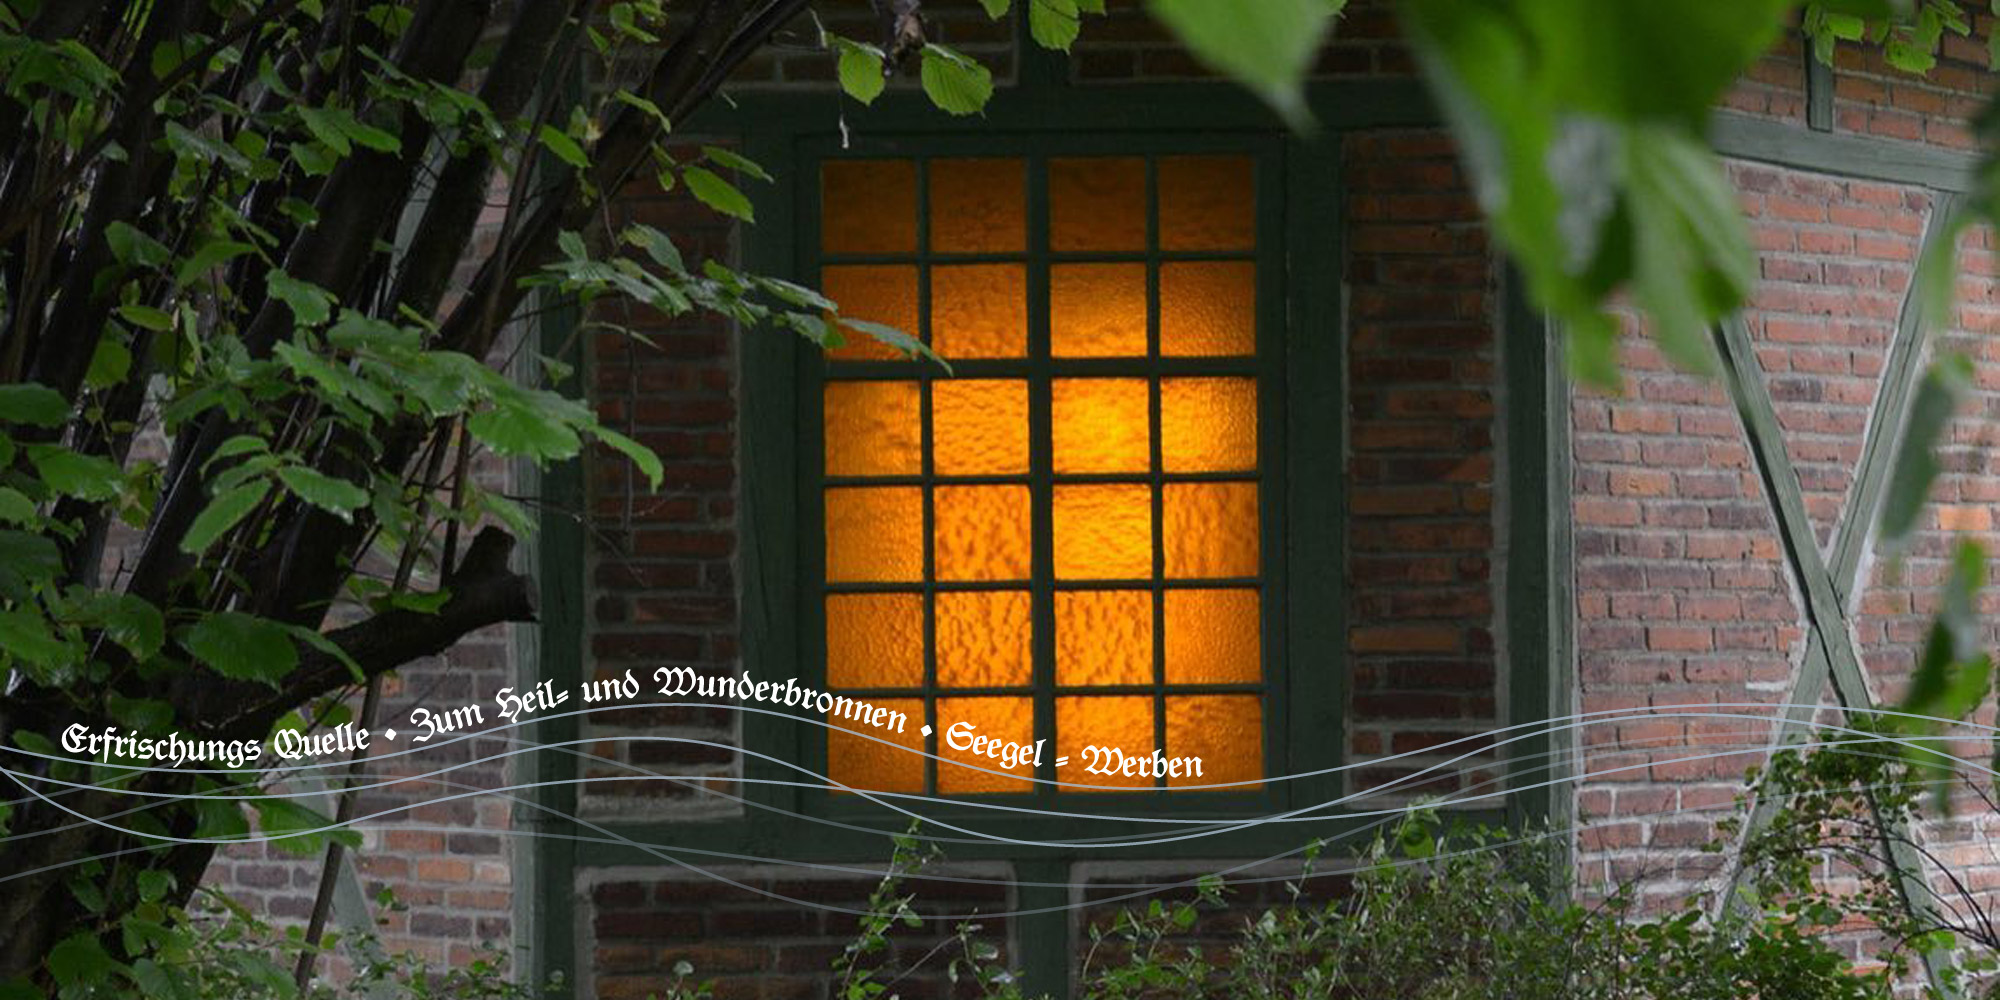 Gestrüpp im Vordergrund, dahinter eine Hauswand, darin ein Fenster mit einem beleuchteten Zimmer, Gescriebener Text; "Erfrischungsquelle - Zum Heil- und Wunderbrunnen -  Seegel - Werben